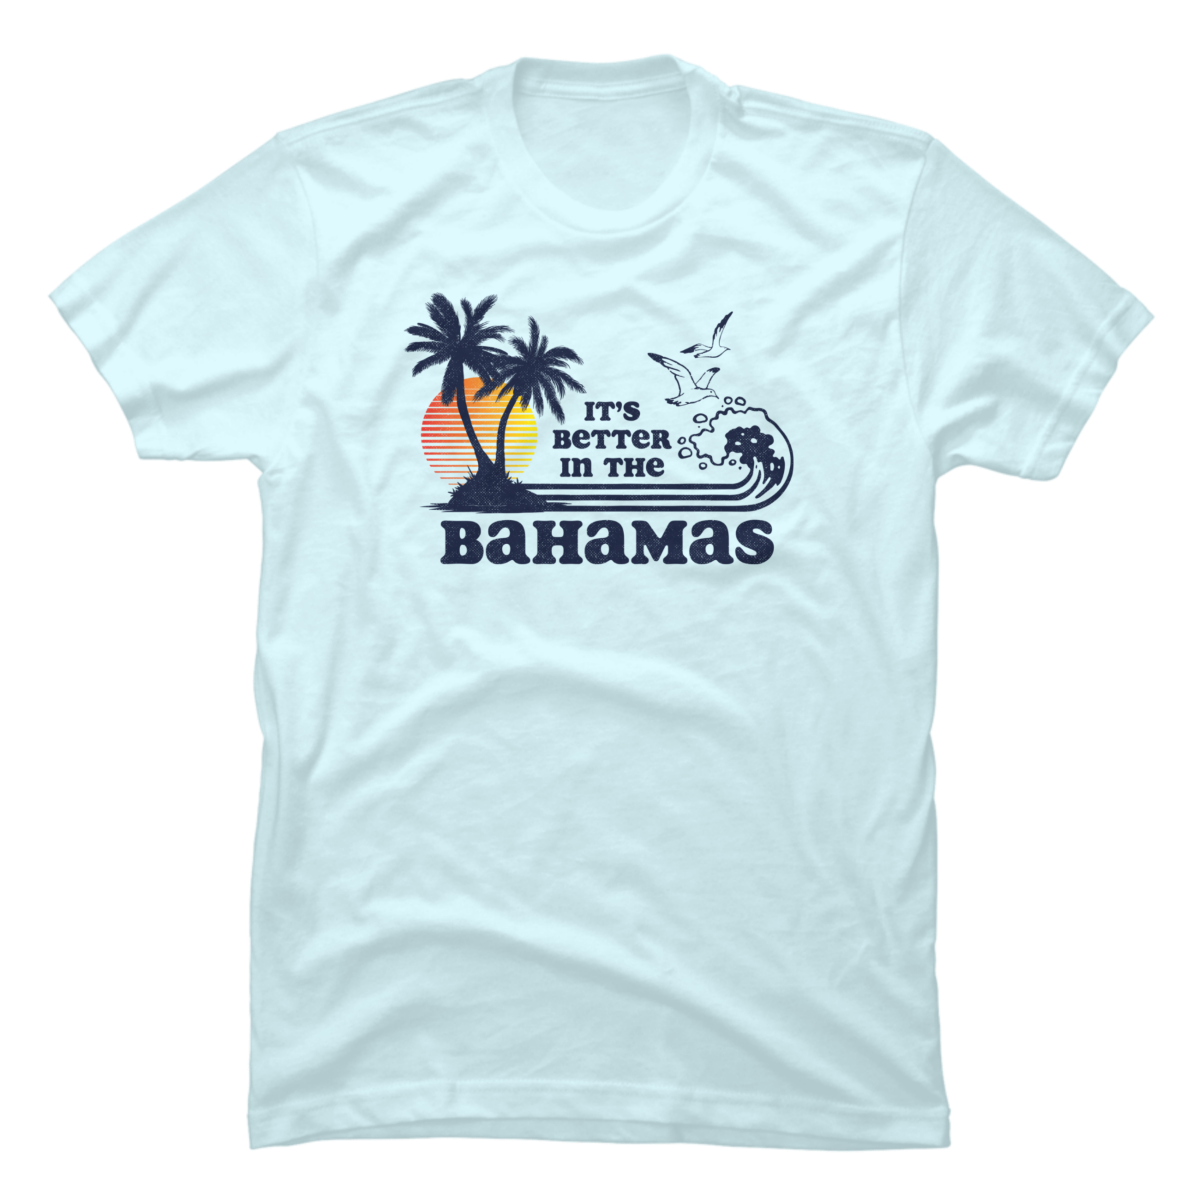 bahamian shirts